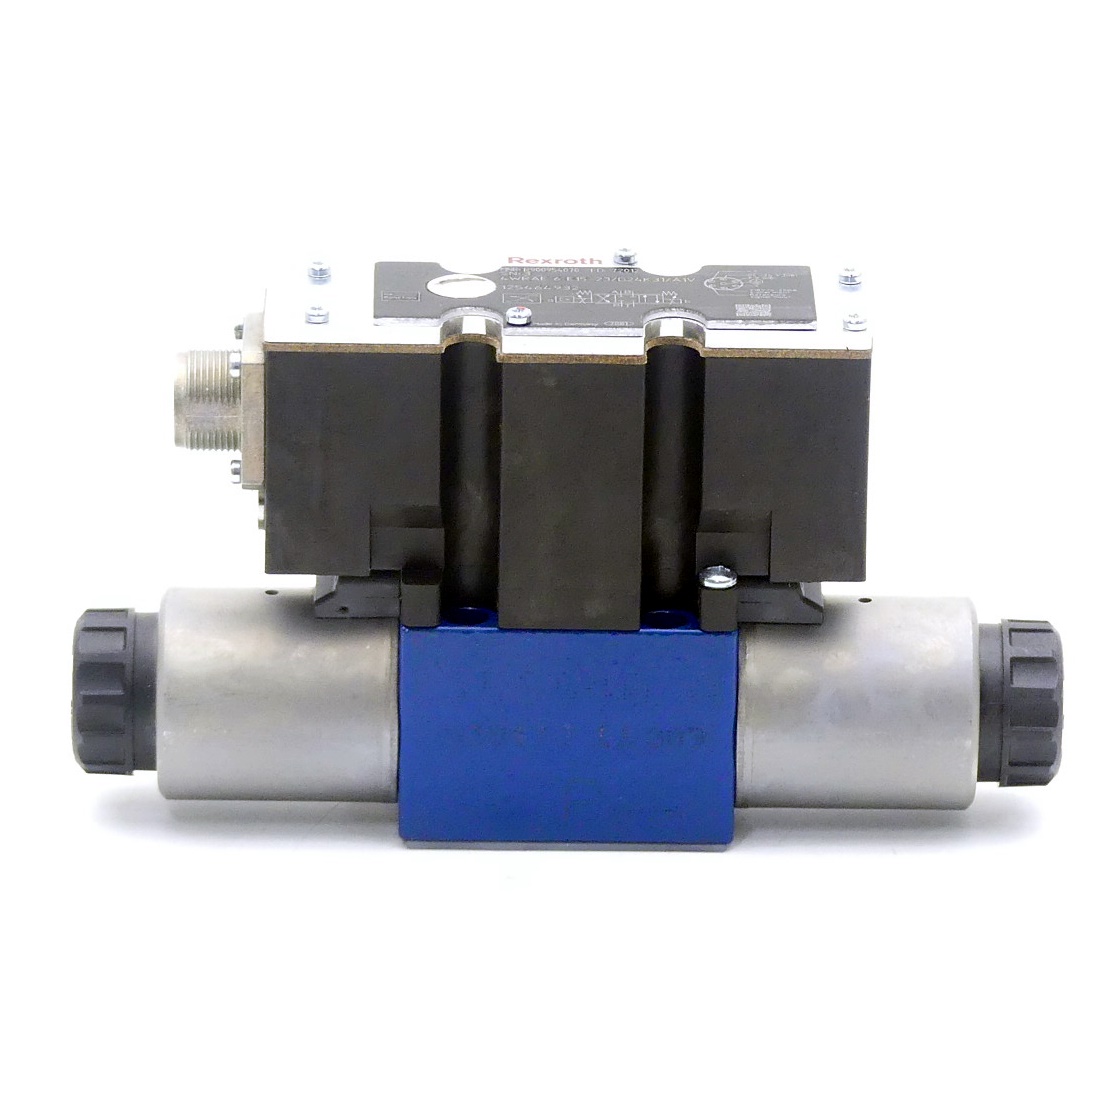 Proportional directional control valve 4WRAE 6 E15-23/G24K31/A1V 